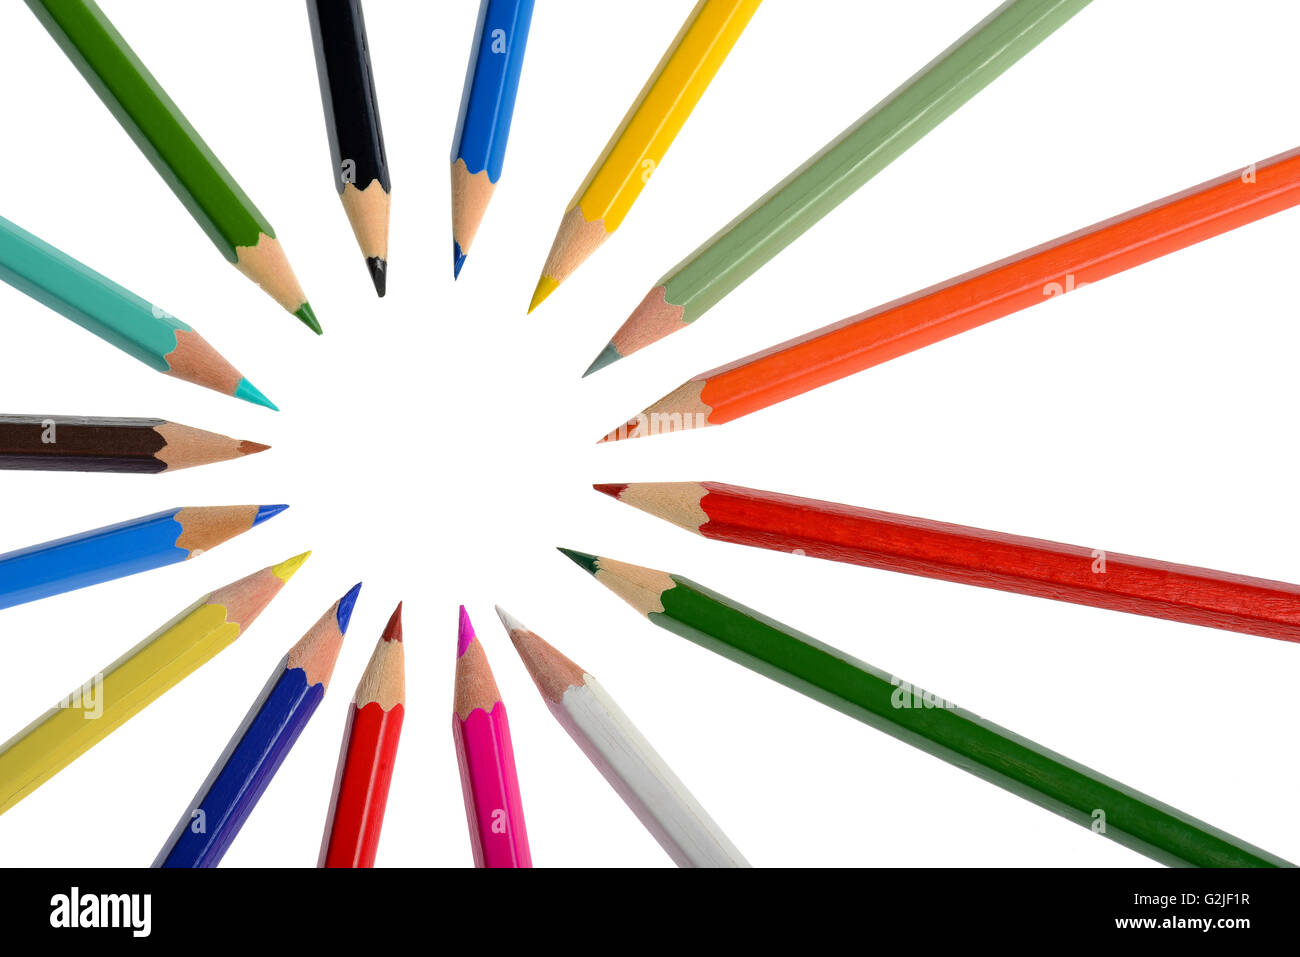 Beaucoup de crayons avec différentes couleurs sur fond blanc Banque D'Images